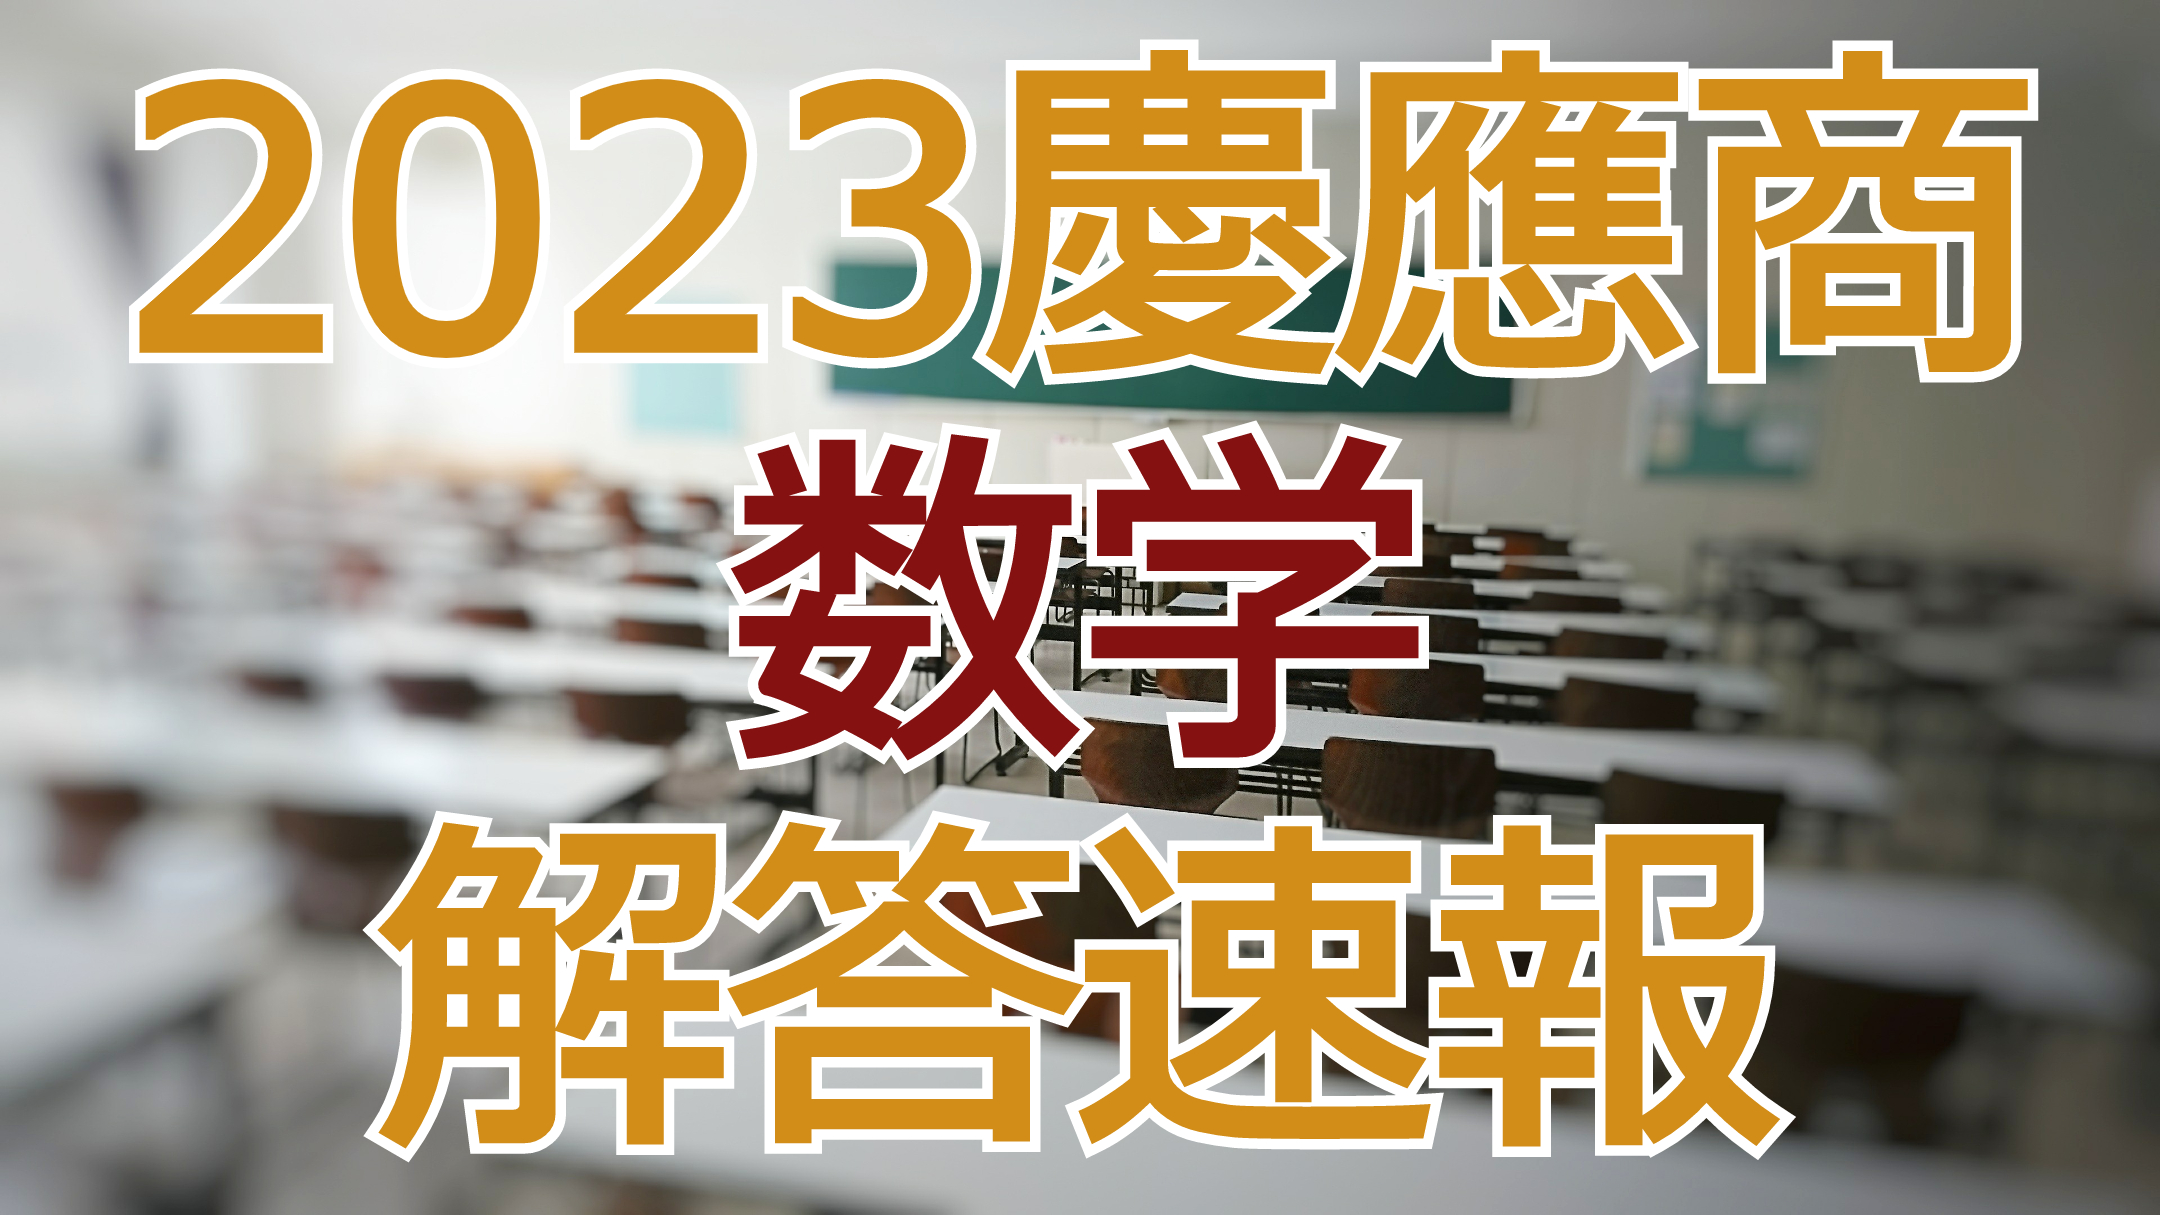 2023慶應商【数学】解答速報